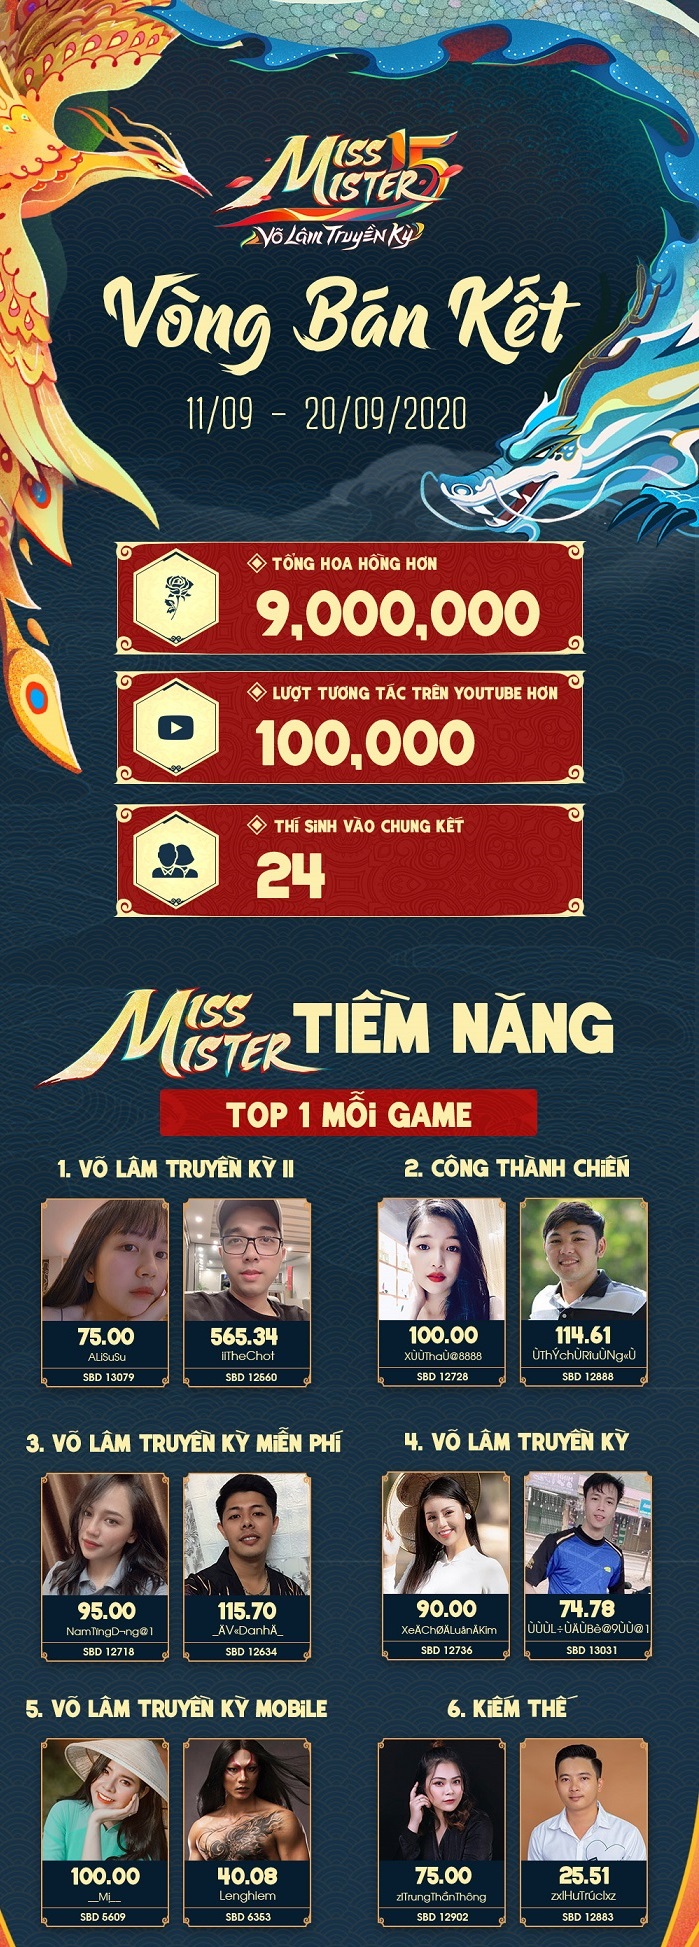 Miss & Mister VLTK 15: Hơn 9 triệu Hoa Hồng được trao và gần 100,000 lượt tương tác trên kênh Youtube